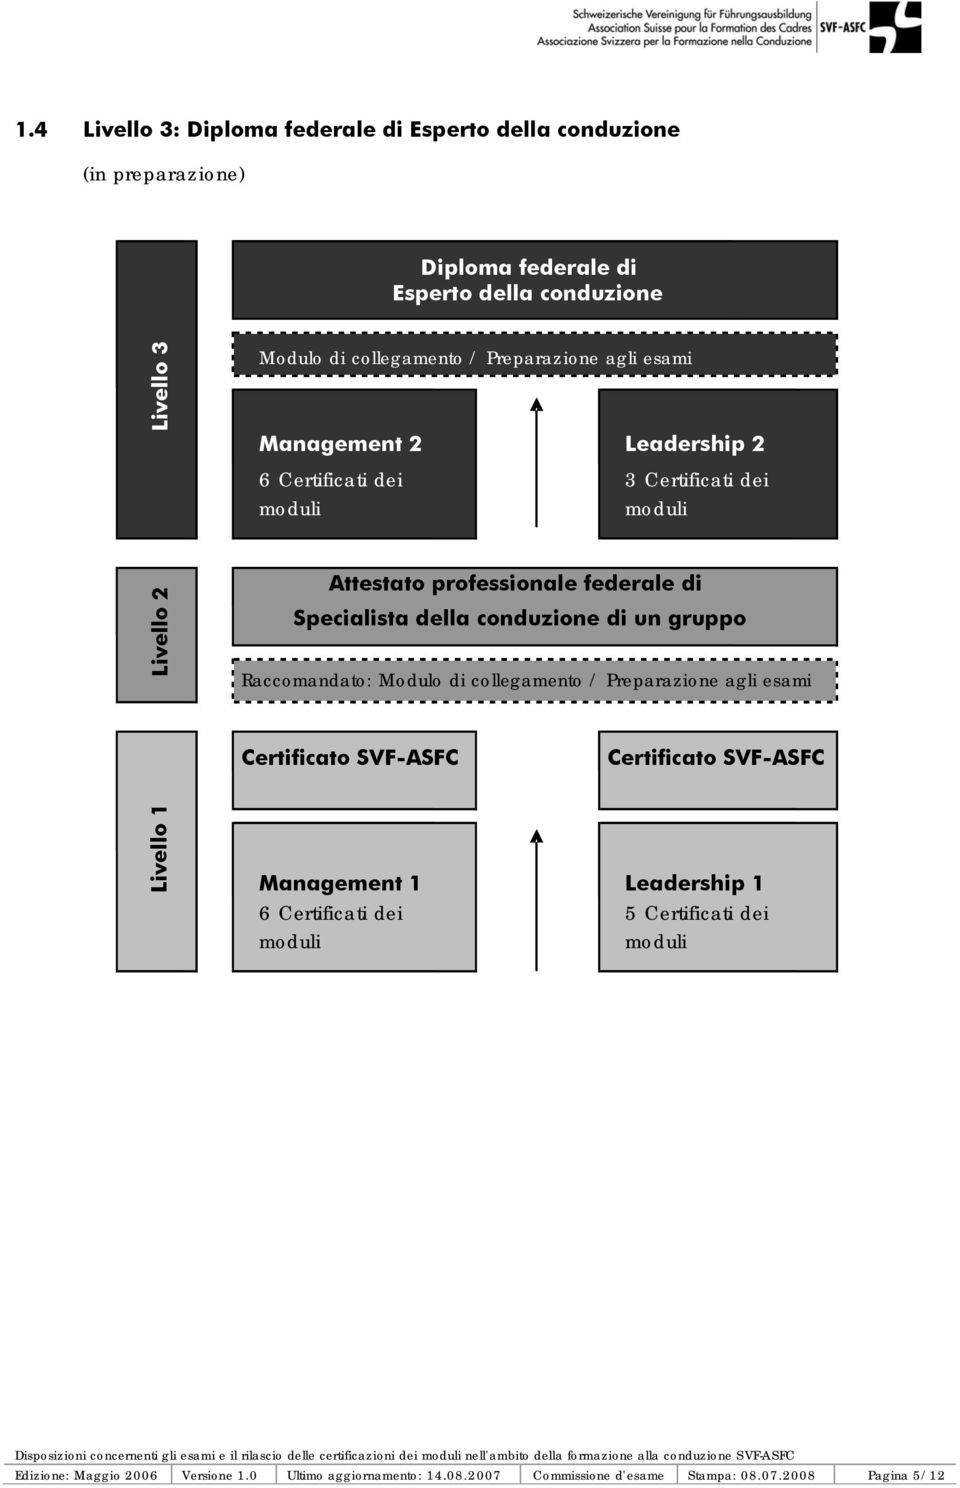 Raccomandato: Modulo di collegamento / Preparazione agli esami Certificato SVF-ASFC Management 1 6 Certificati dei moduli Leadership 2 3 Certificati dei moduli